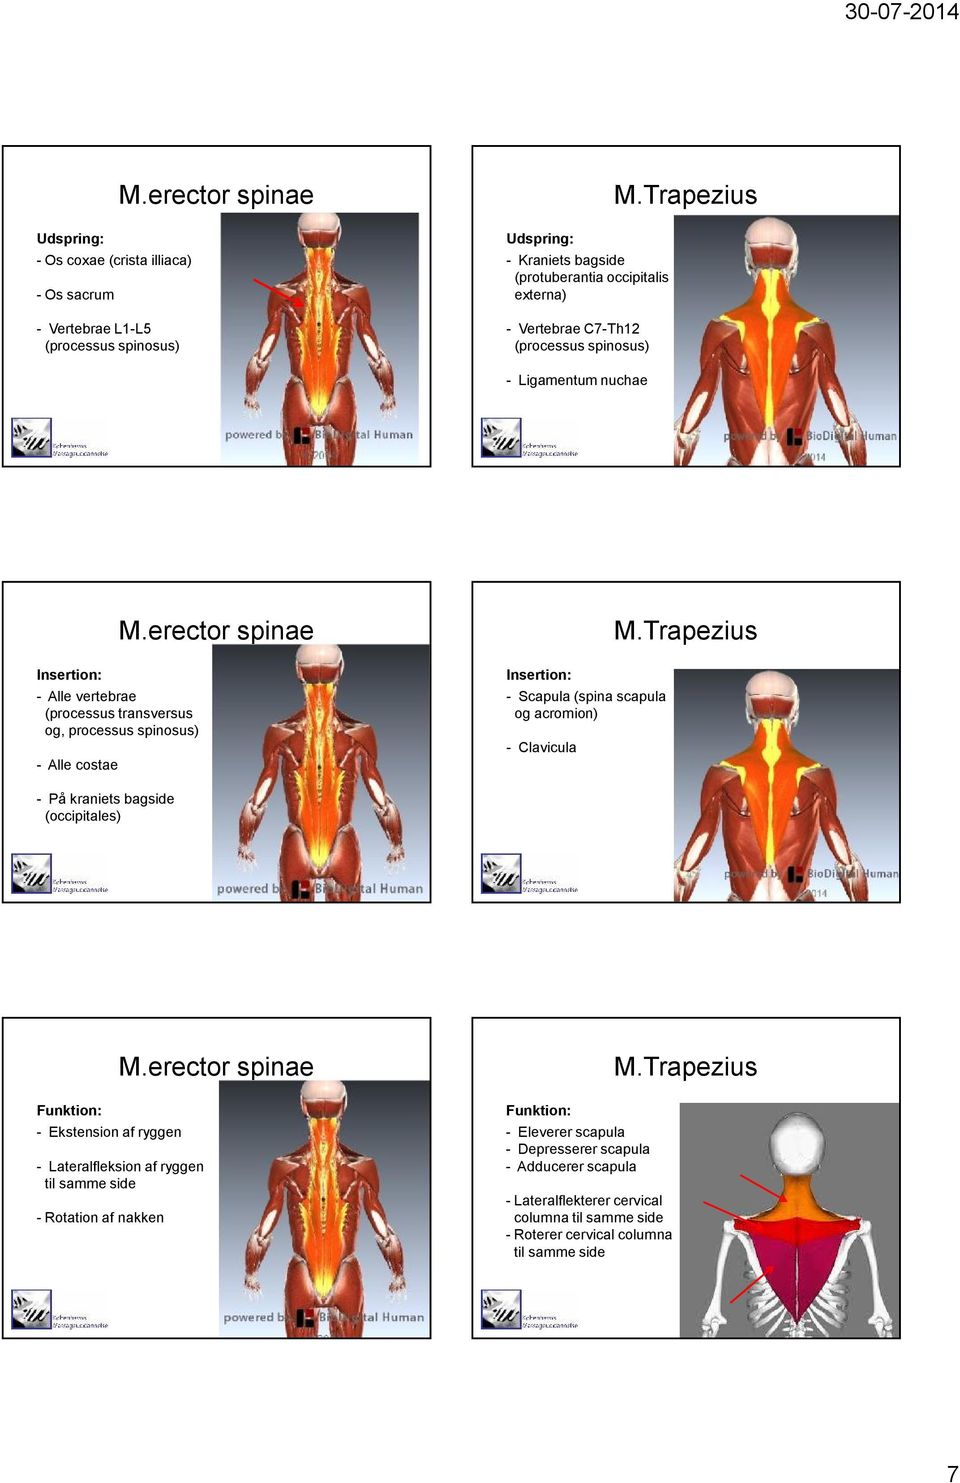 erector spinae - Alle vertebrae (processus transversus og, processus spinosus) - Alle costae - Scapula (spina scapula og acromion) - Clavicula M.